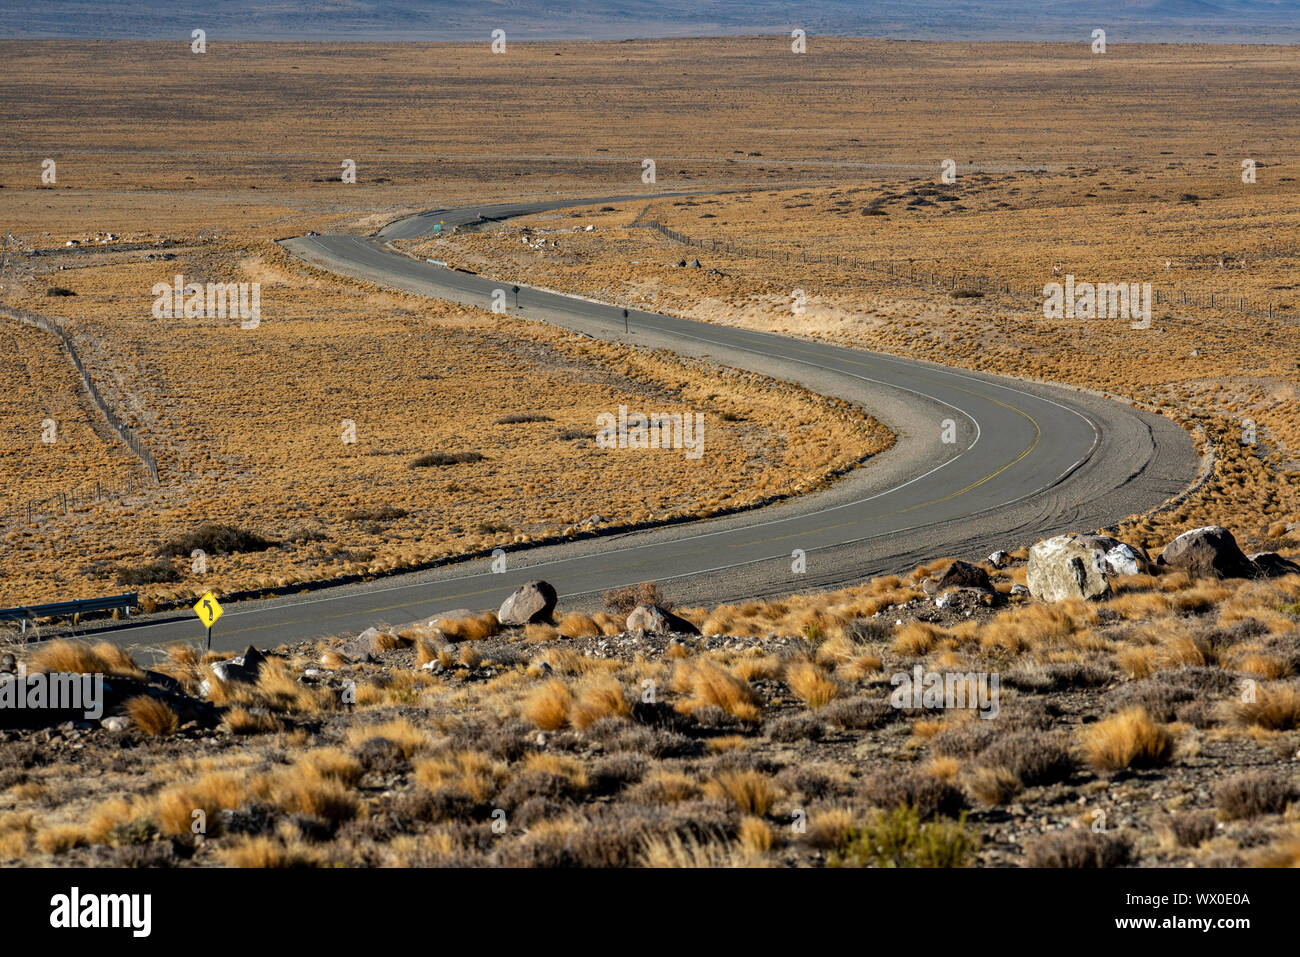 La route panoramique traversant un paysage, Route Nationale 40, en Patagonie, Argentine, Amérique du Sud Banque D'Images